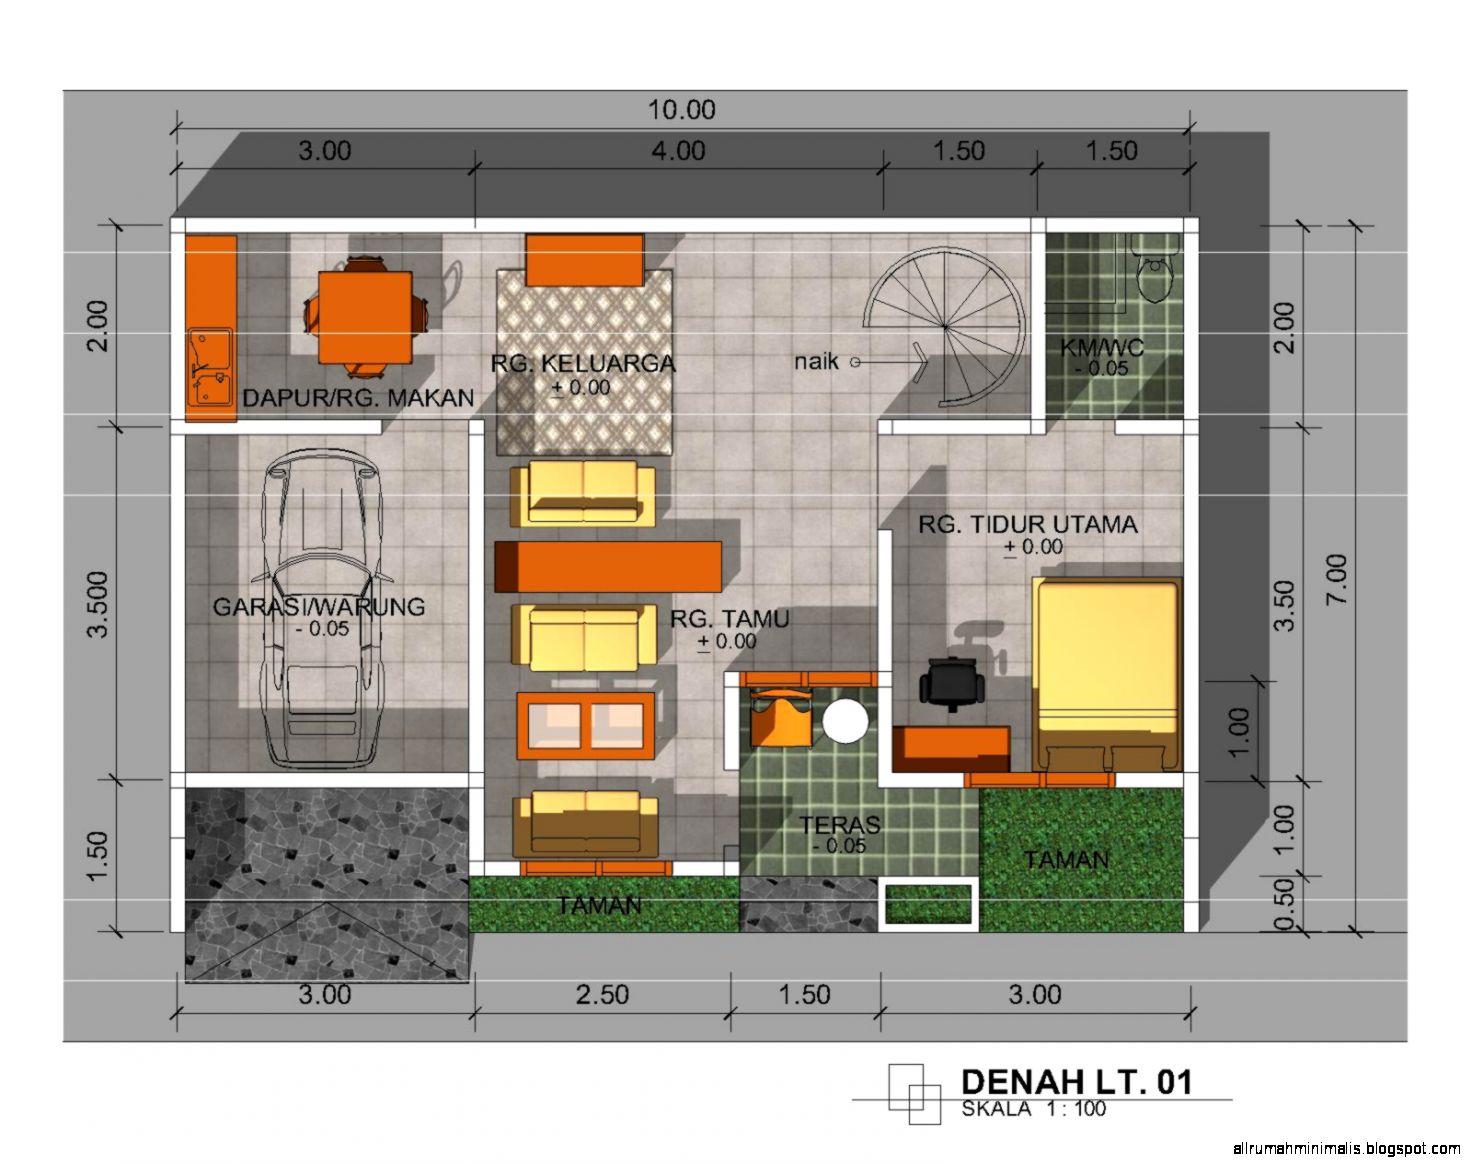  Desain Rumah Minimalis Dan Denah Design Rumah Minimalis 